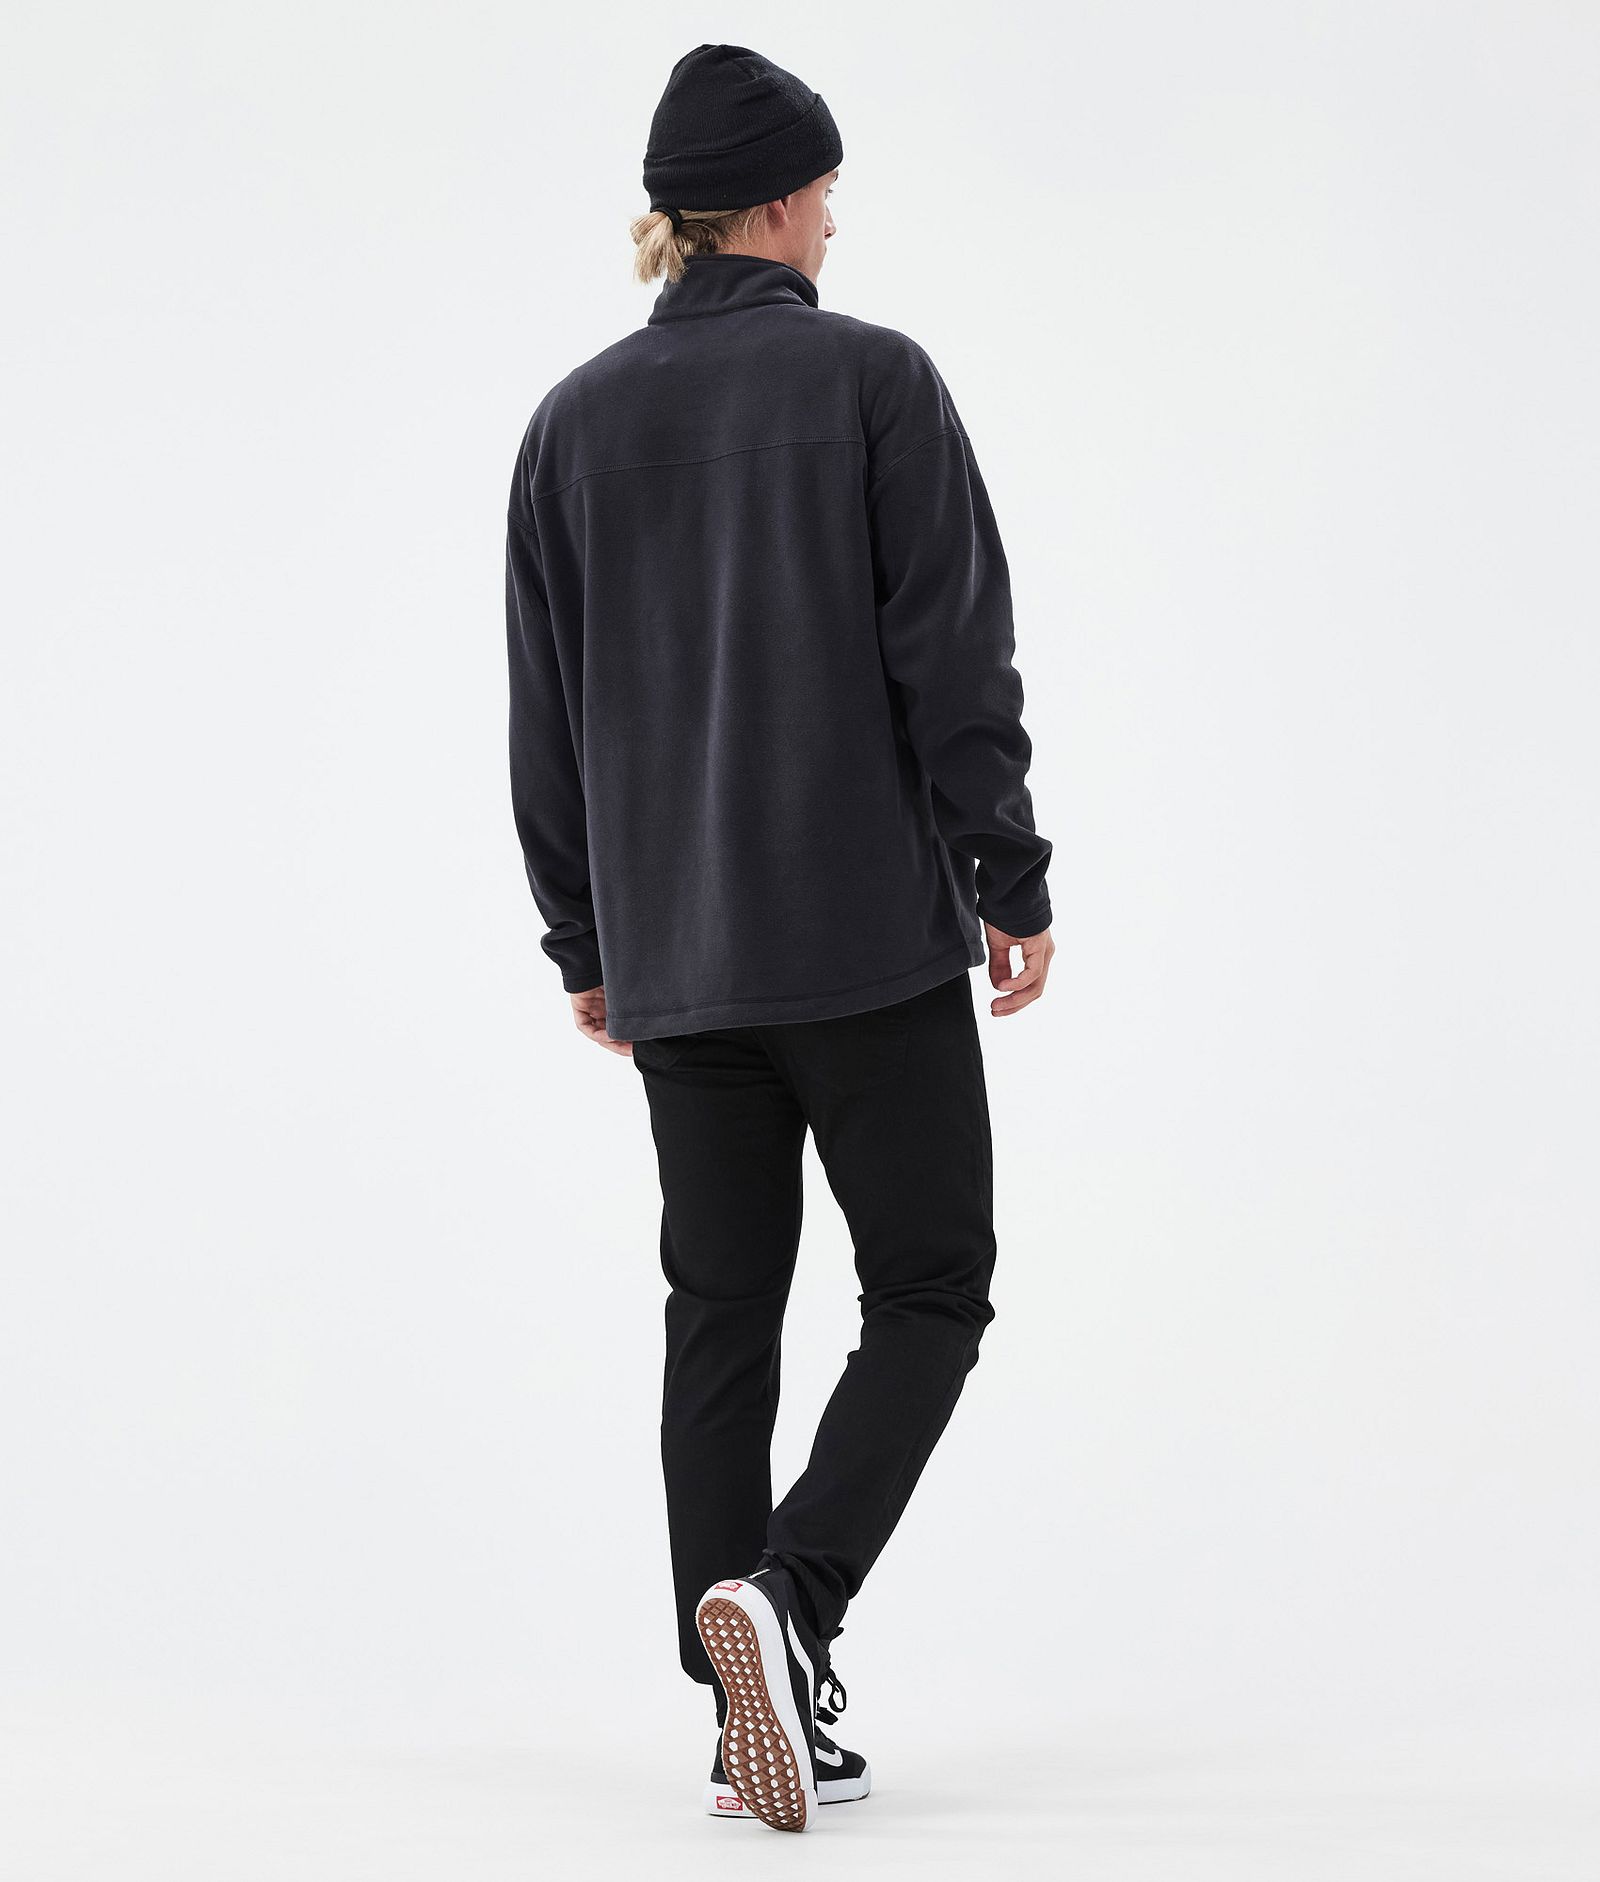 Comfy Fleece Sweater Men Black Renewed, Image 4 of 6